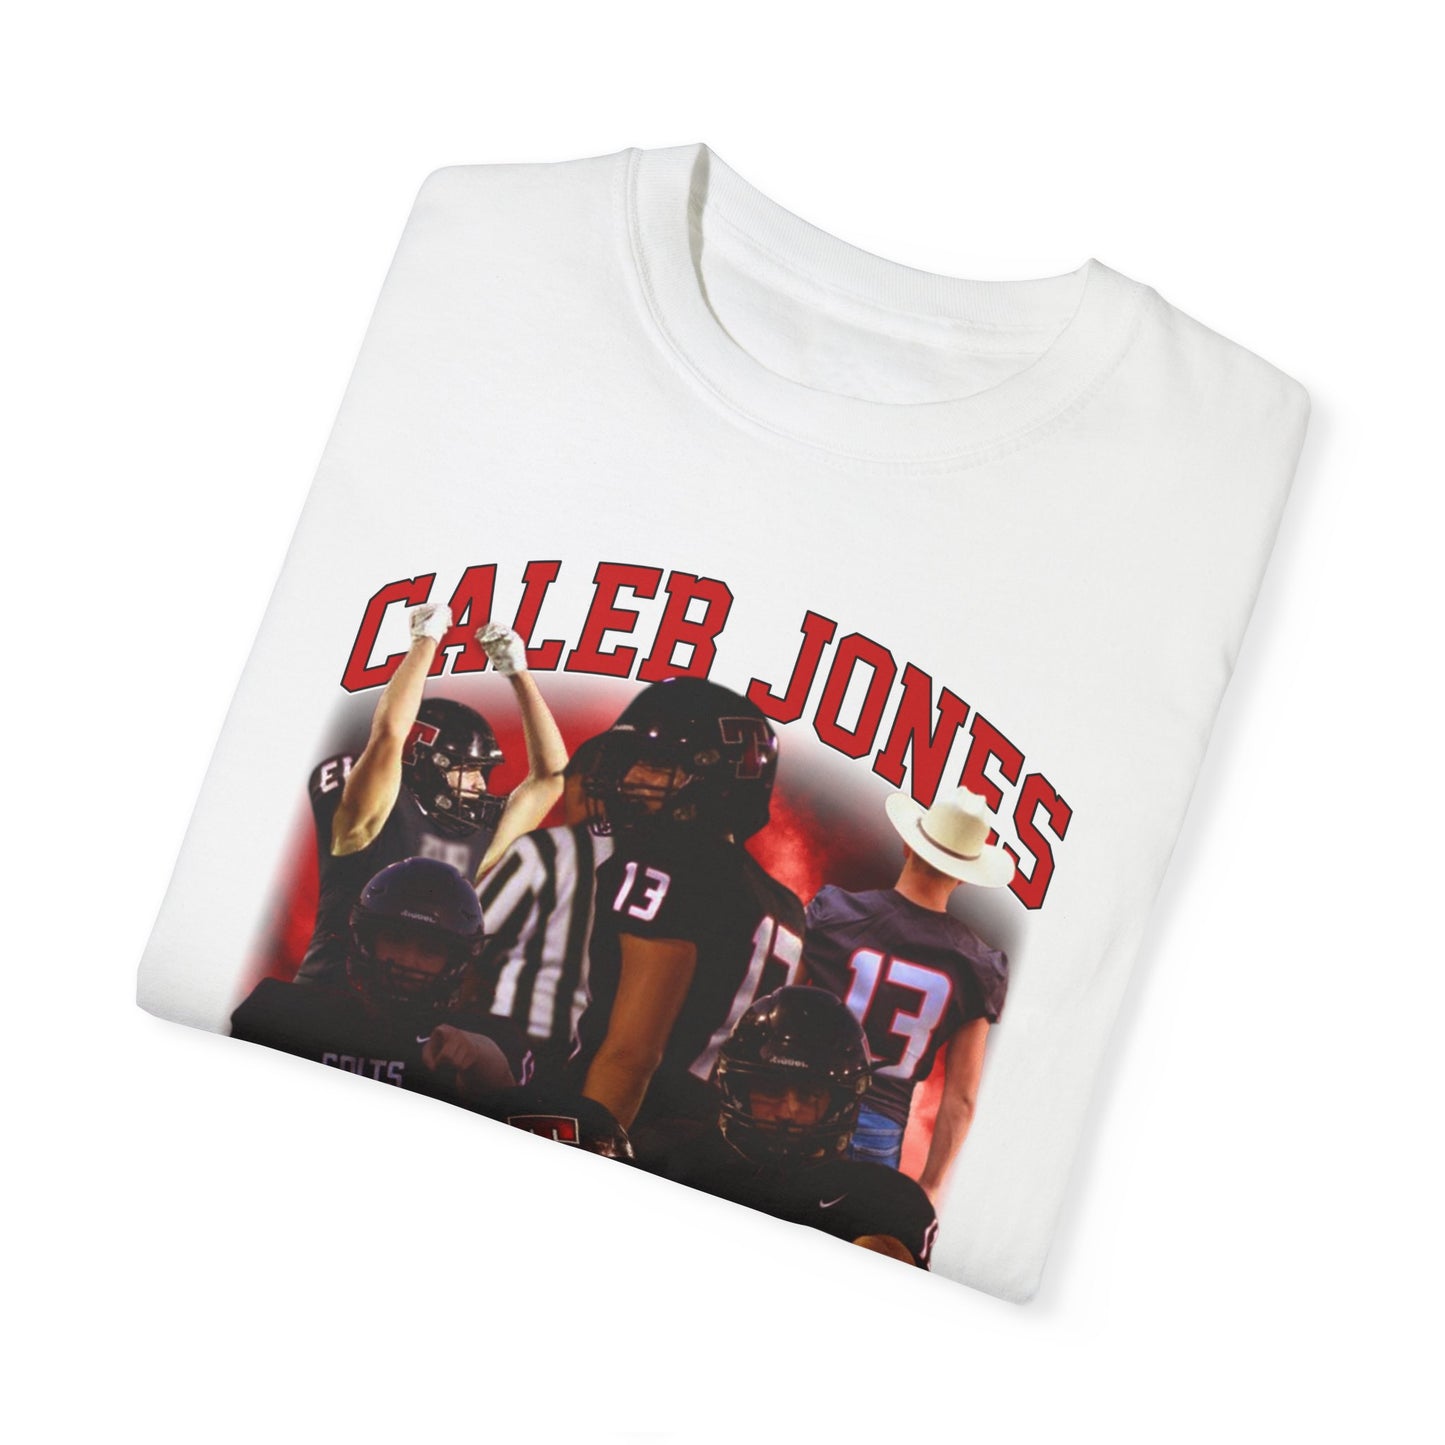 Caleb Jones Graphic Tee shirt